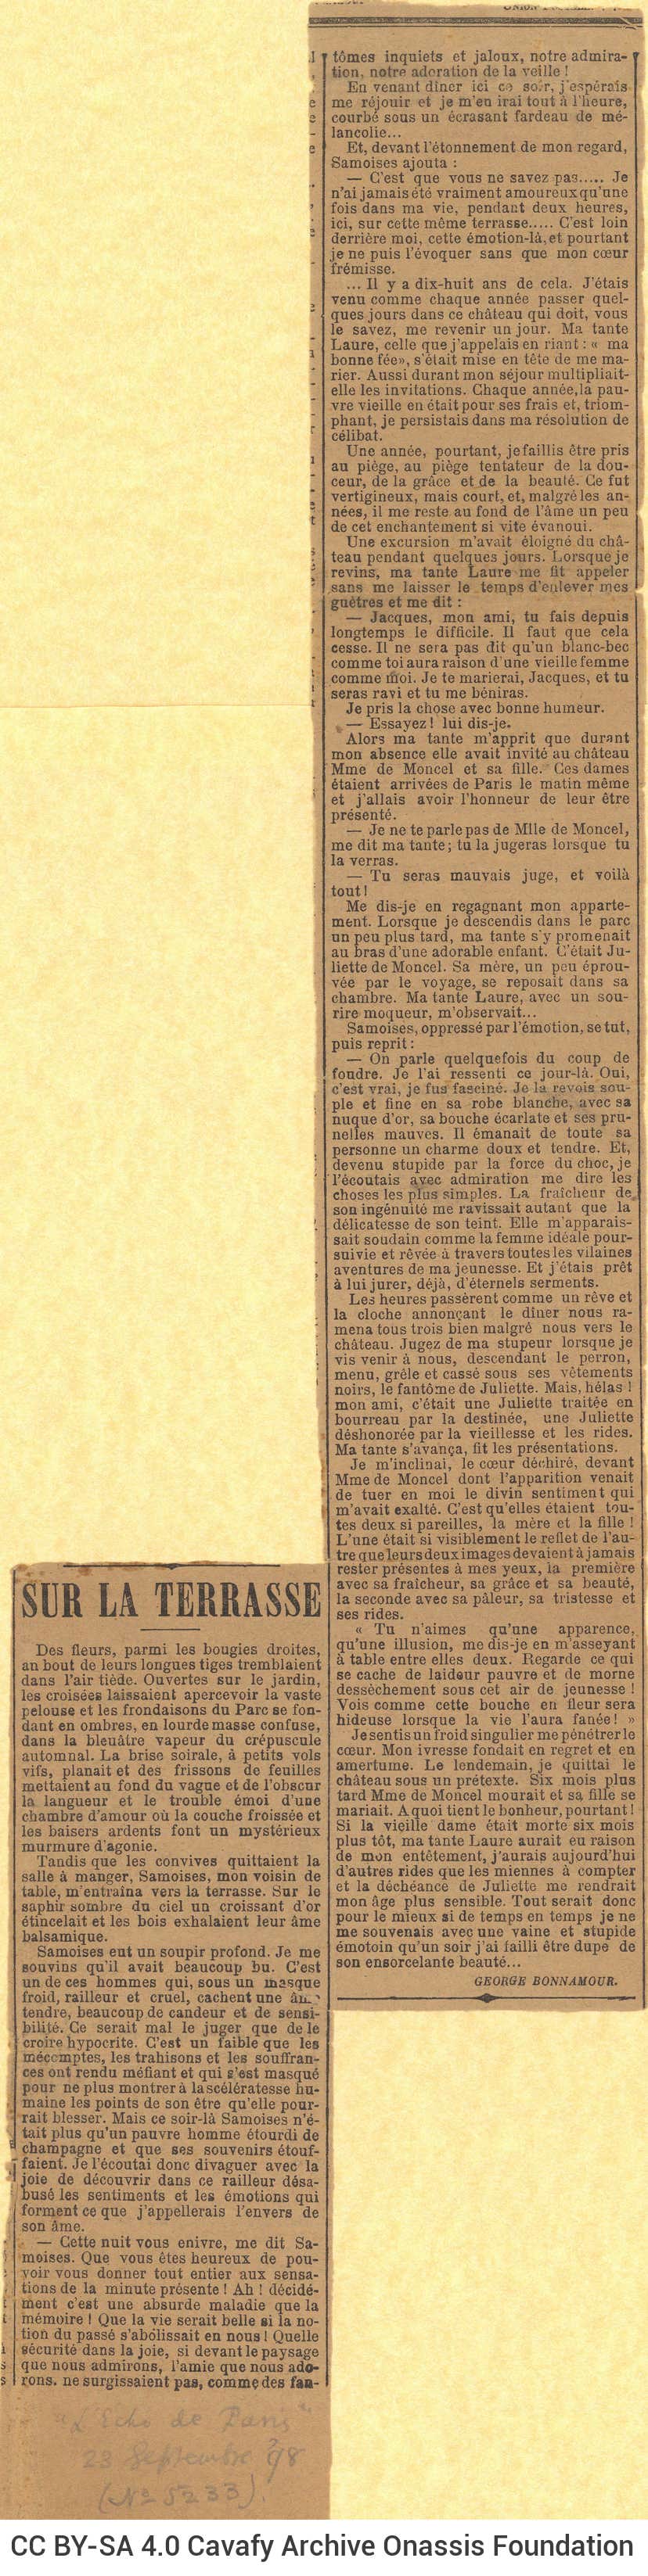 Απόκομμα από την εφημερίδα *L'Écho de Paris*. Περιέχει άρθρο του Ζωρζ Μπονν�